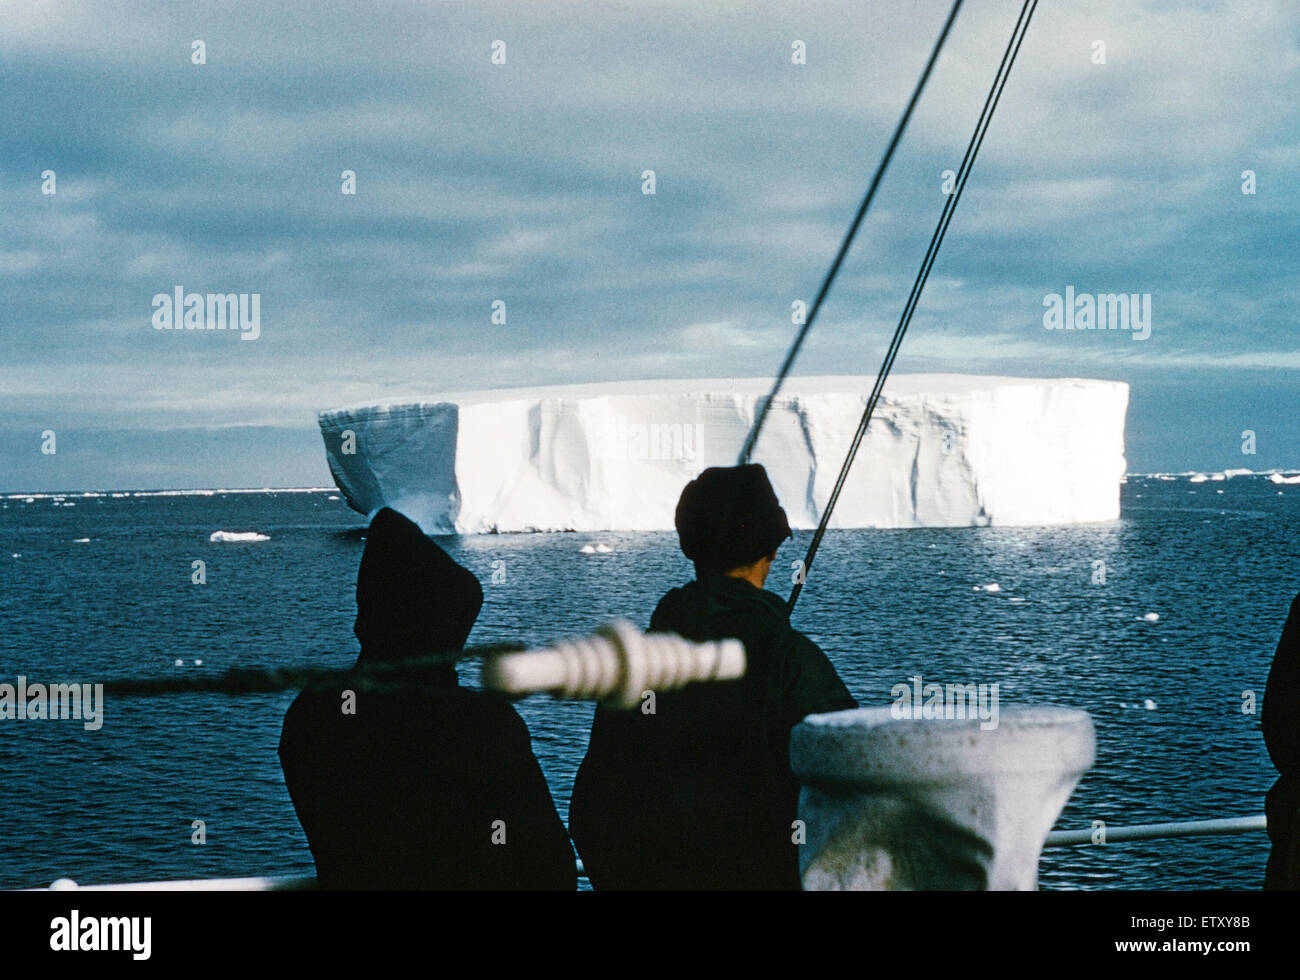 1956 Expedtion transantarctique. Le 1955 ?58 Expédition transantarctique du Commonwealth était un Commonwealth-parrainé expédition qui a terminé avec succès la première traversée terrestre de l'Antarctique, via le Pôle Sud. Continent Antarctique 1956. Banque D'Images